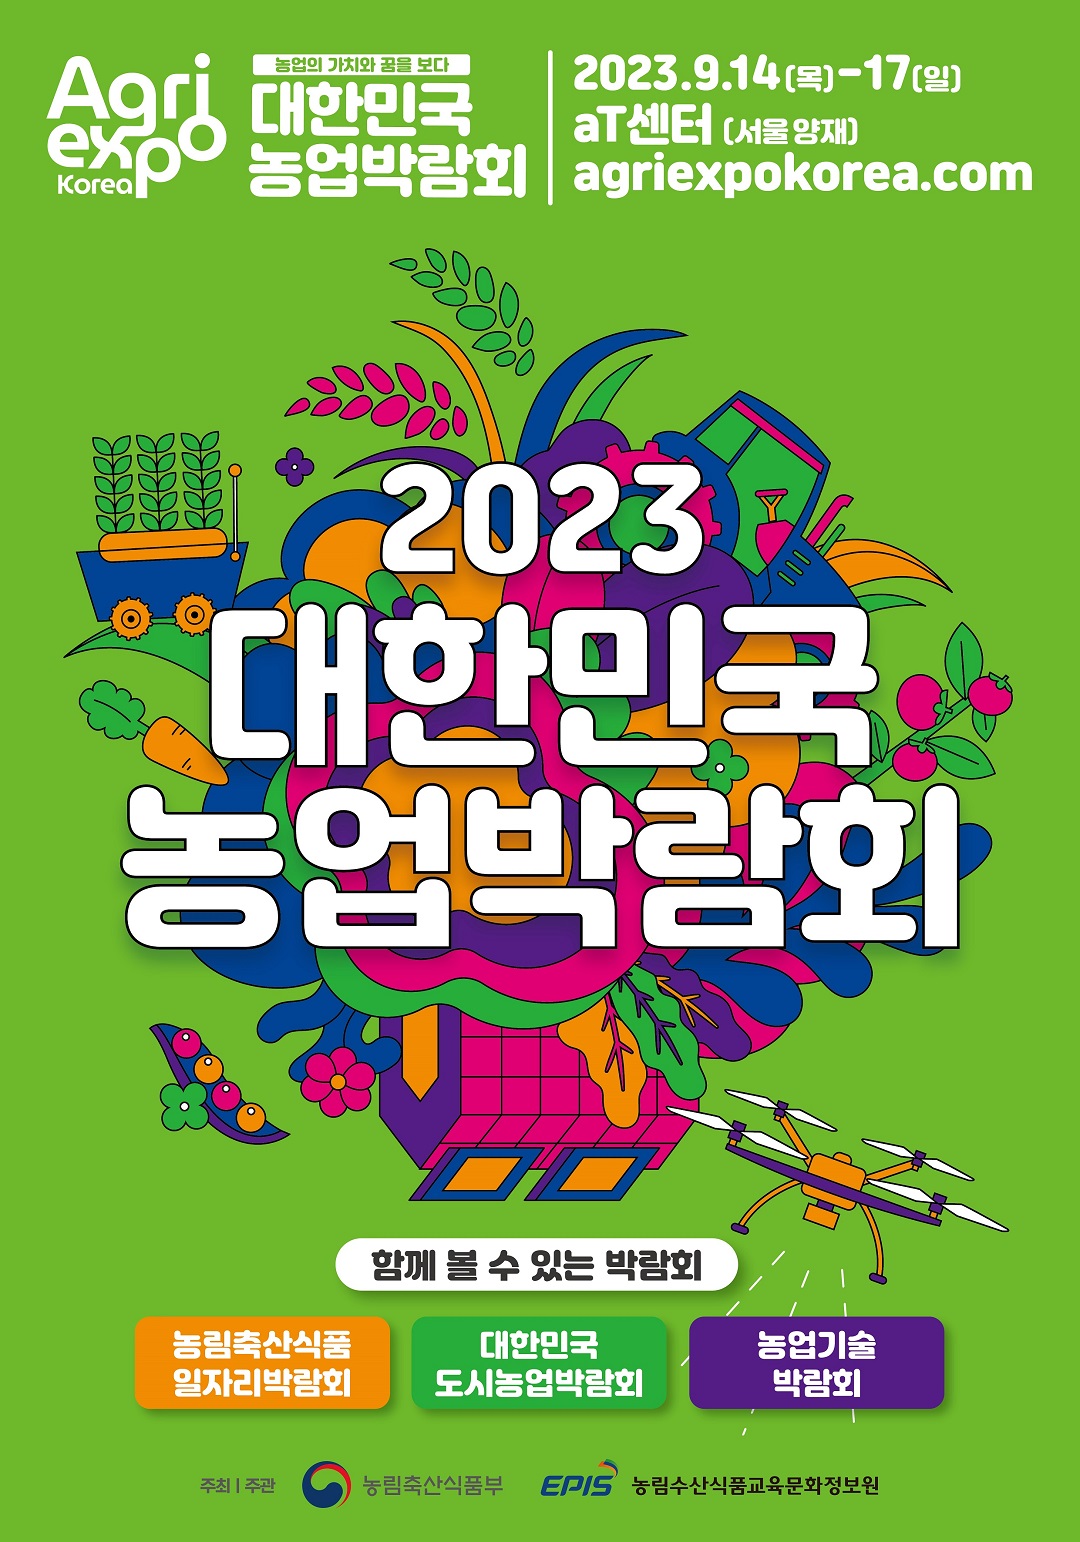 2023 대한민국 농업박람회